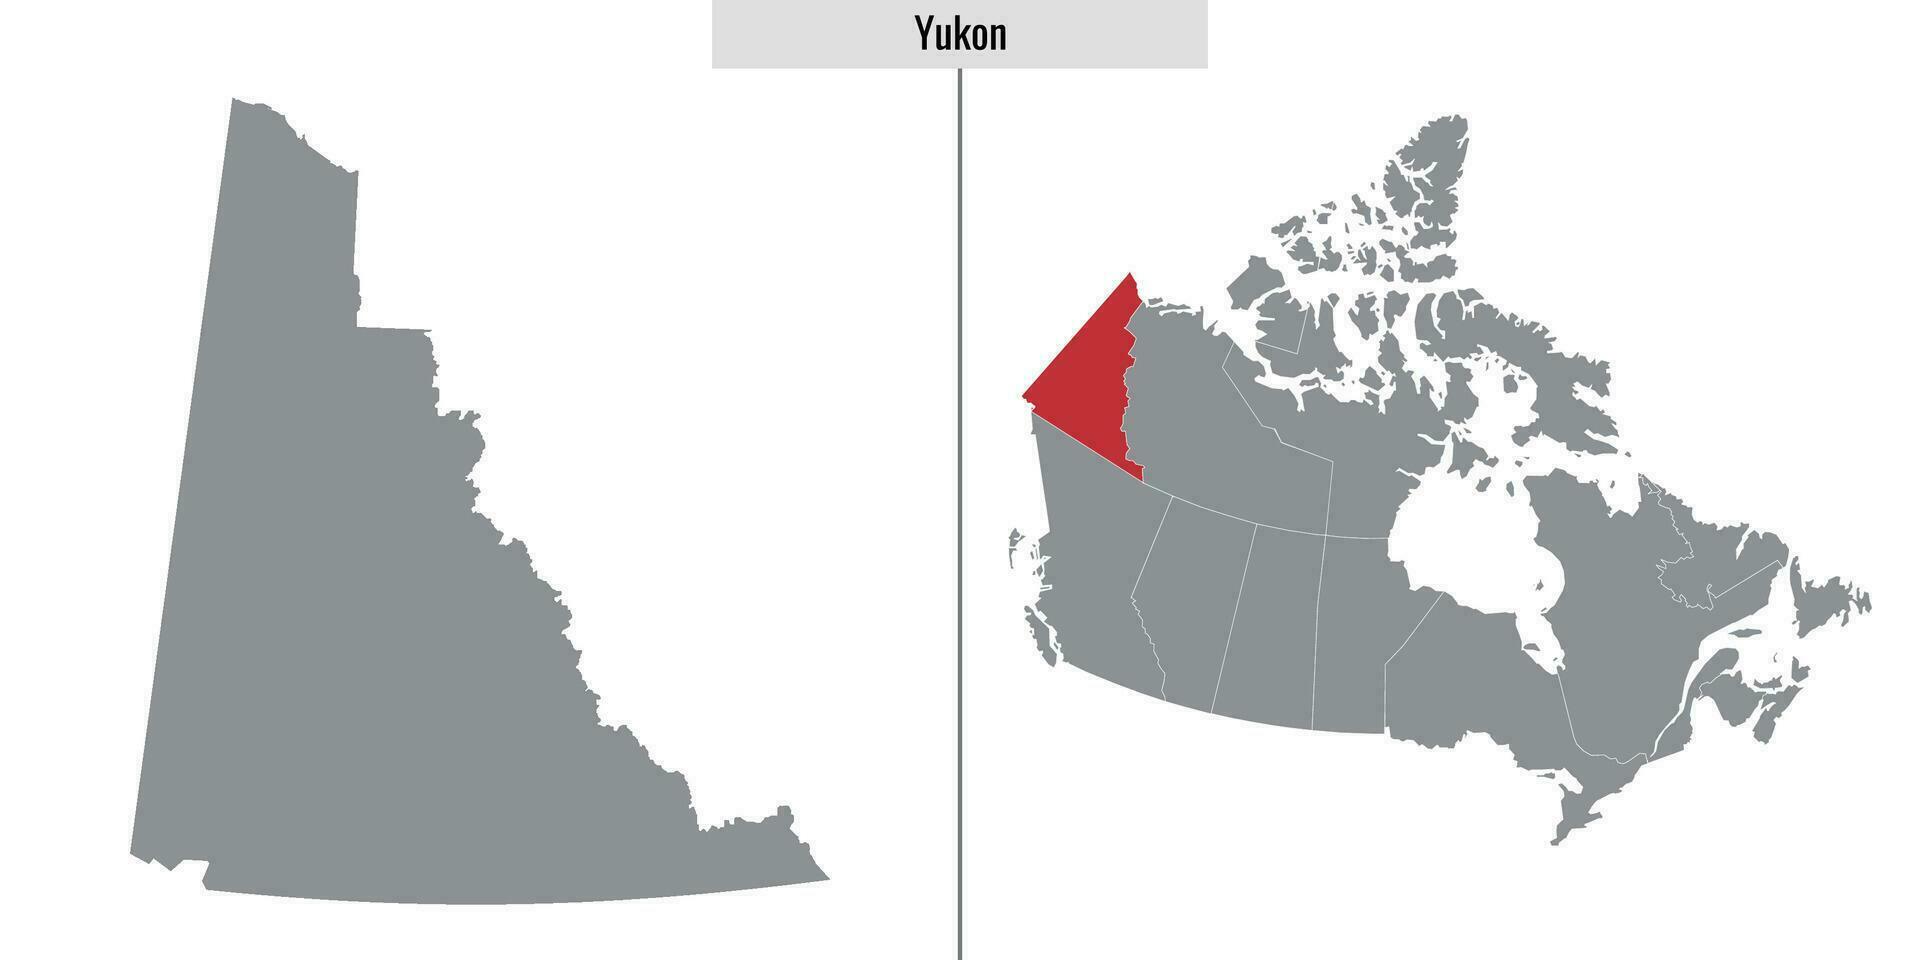 mapa provincia de canada vector